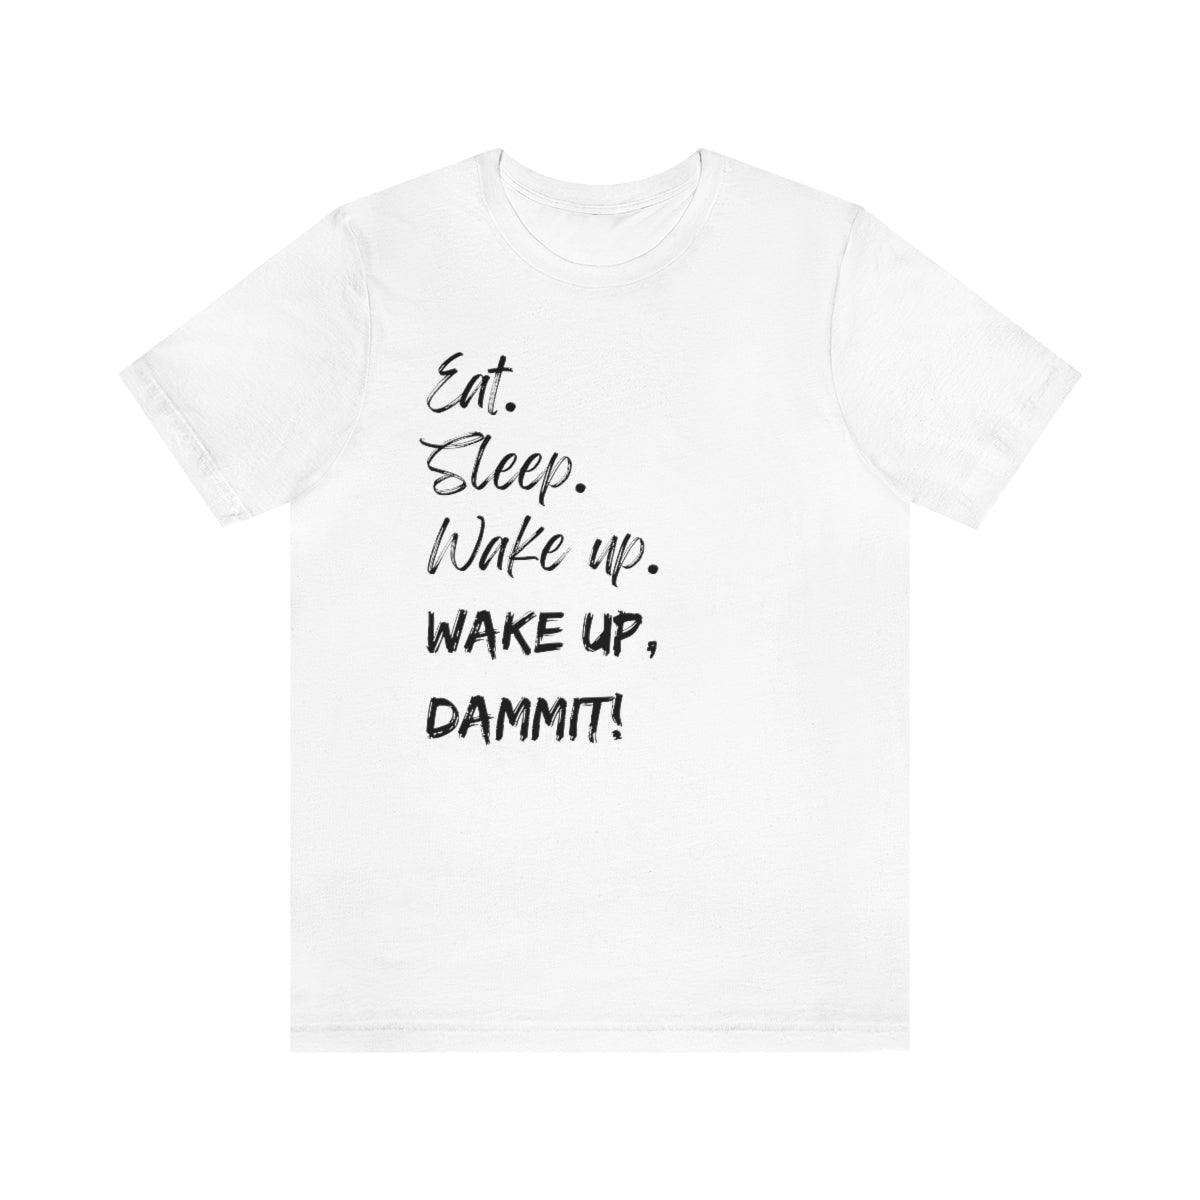 Eat. Sleep. Wake Up, Dammit! Unisex Jersey Short Sleeve Tee